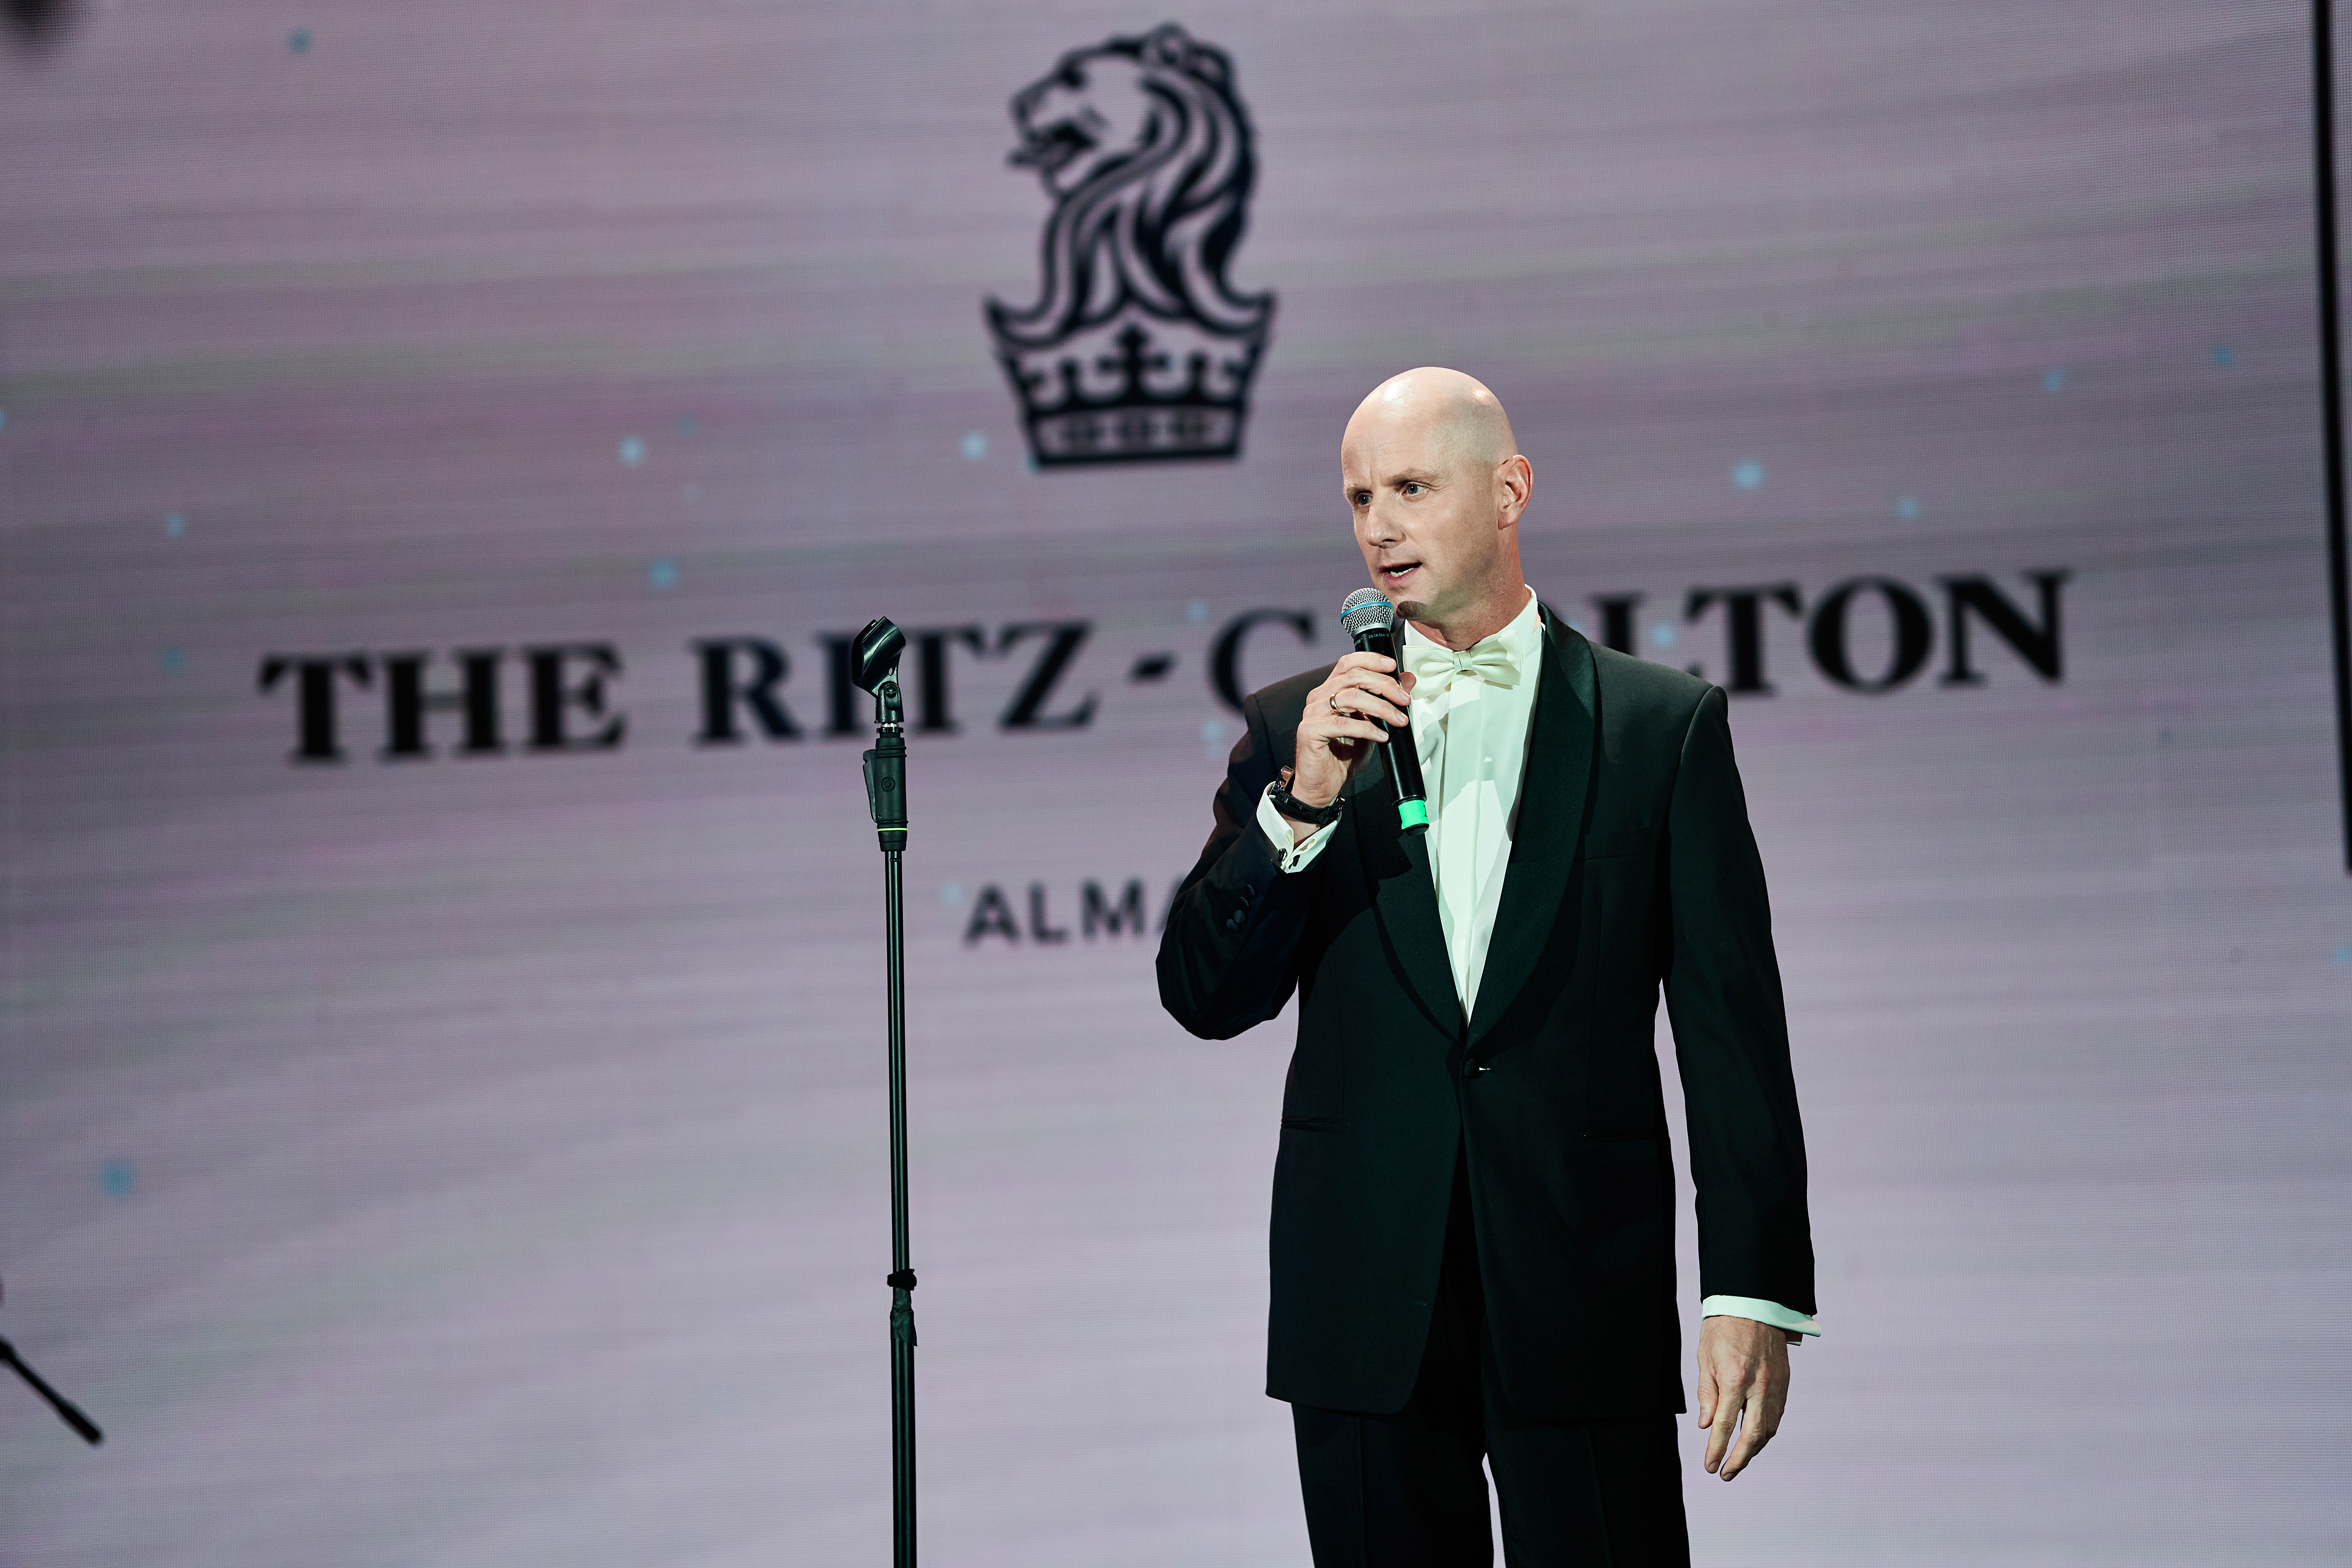 Яркий гала-вечер в честь 10-летия The Ritz-Carlton, Almaty